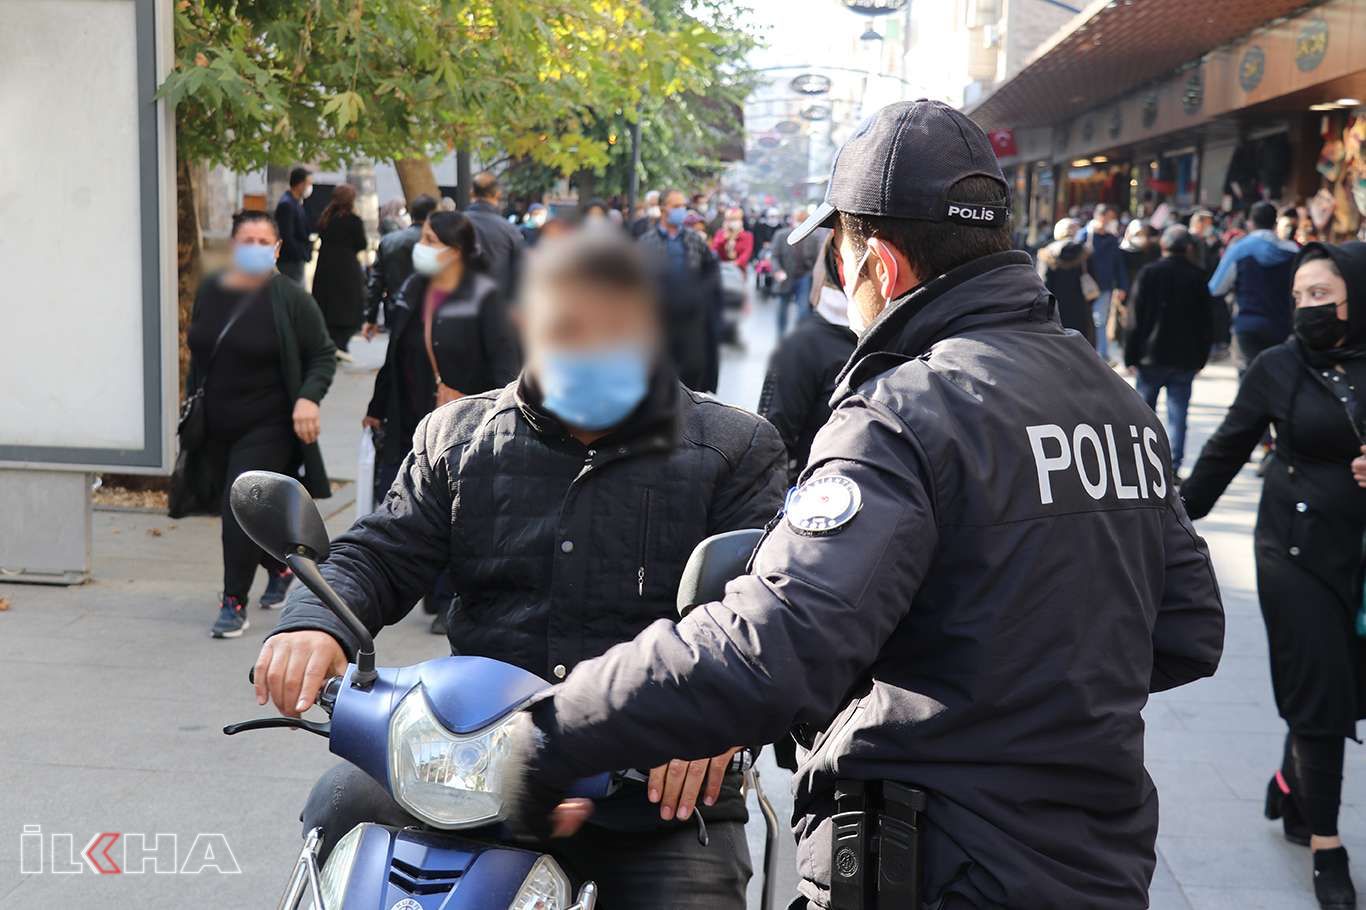 Gaziantep’te Covid-19 kurallarına uymayan 847 kişiye para cezası verildi